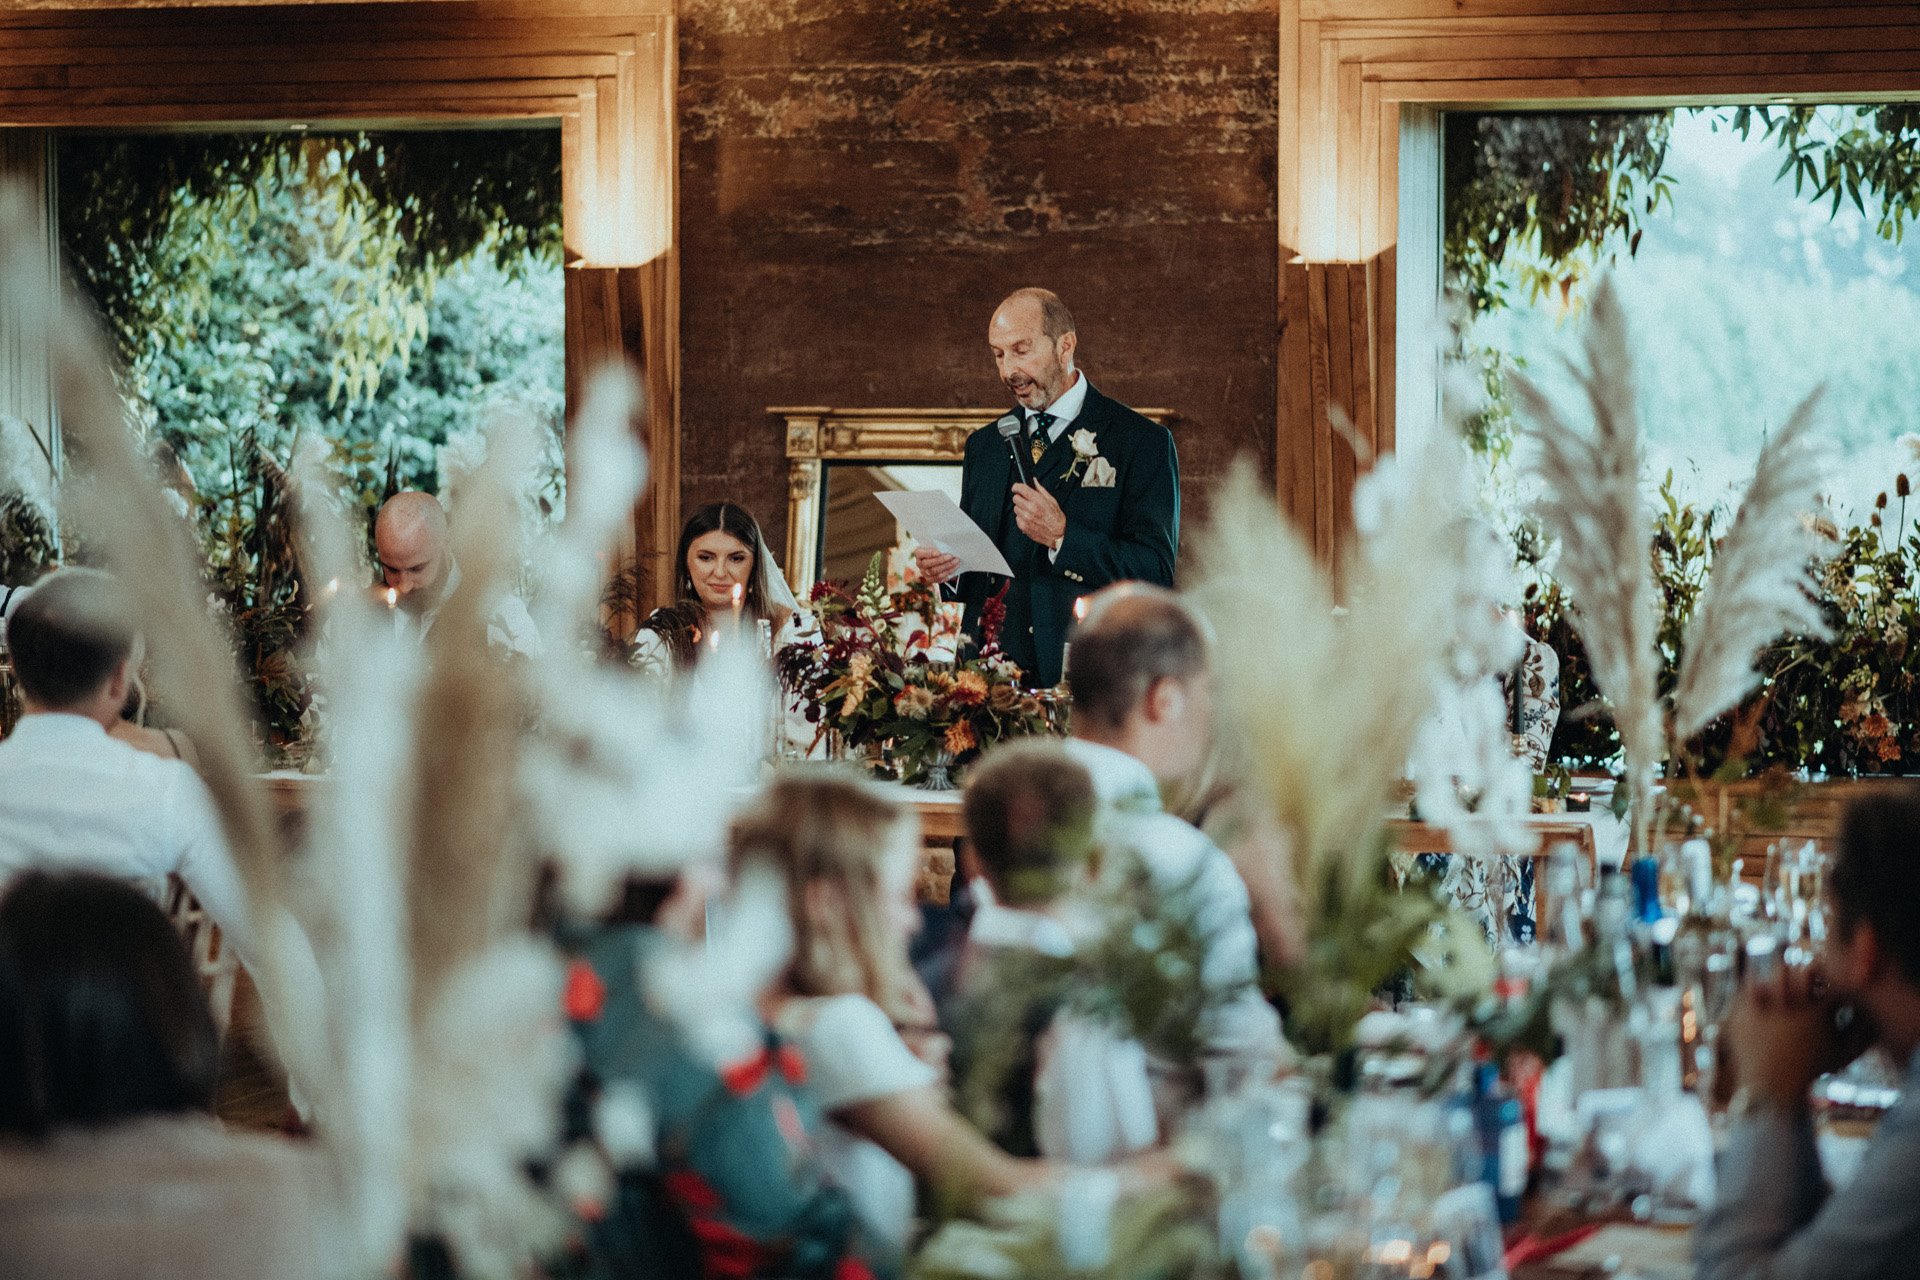 Rustic romantic wedding reception in rammed earth eco venue